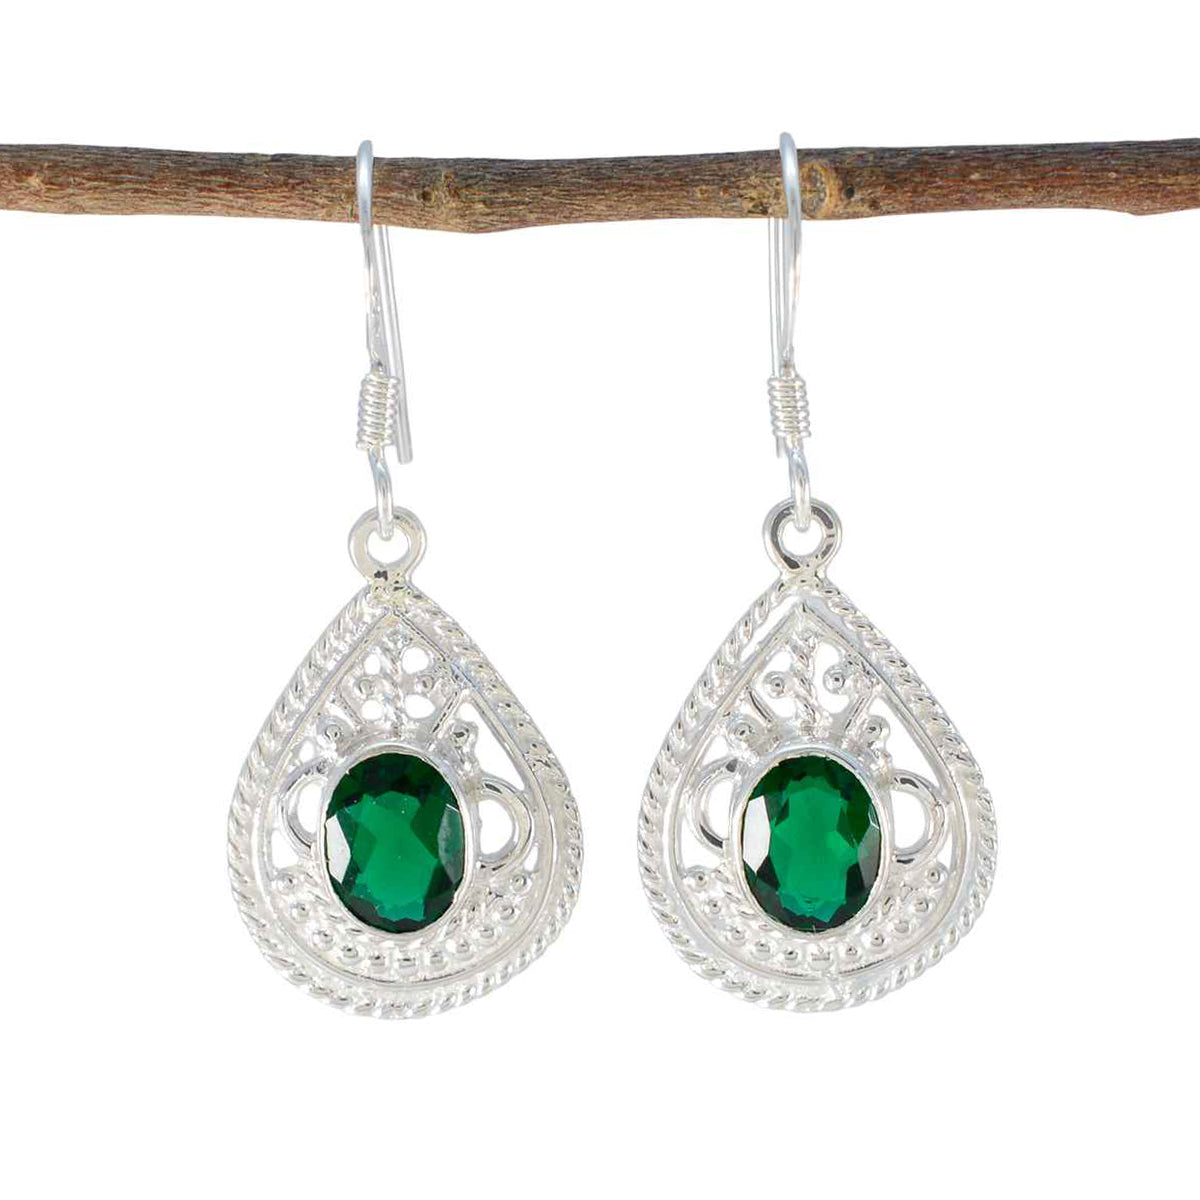 riyo fanciable sterling silver örhänge för femme smaragd cz örhänge bezel inställning grönt örhänge dingla örhänge